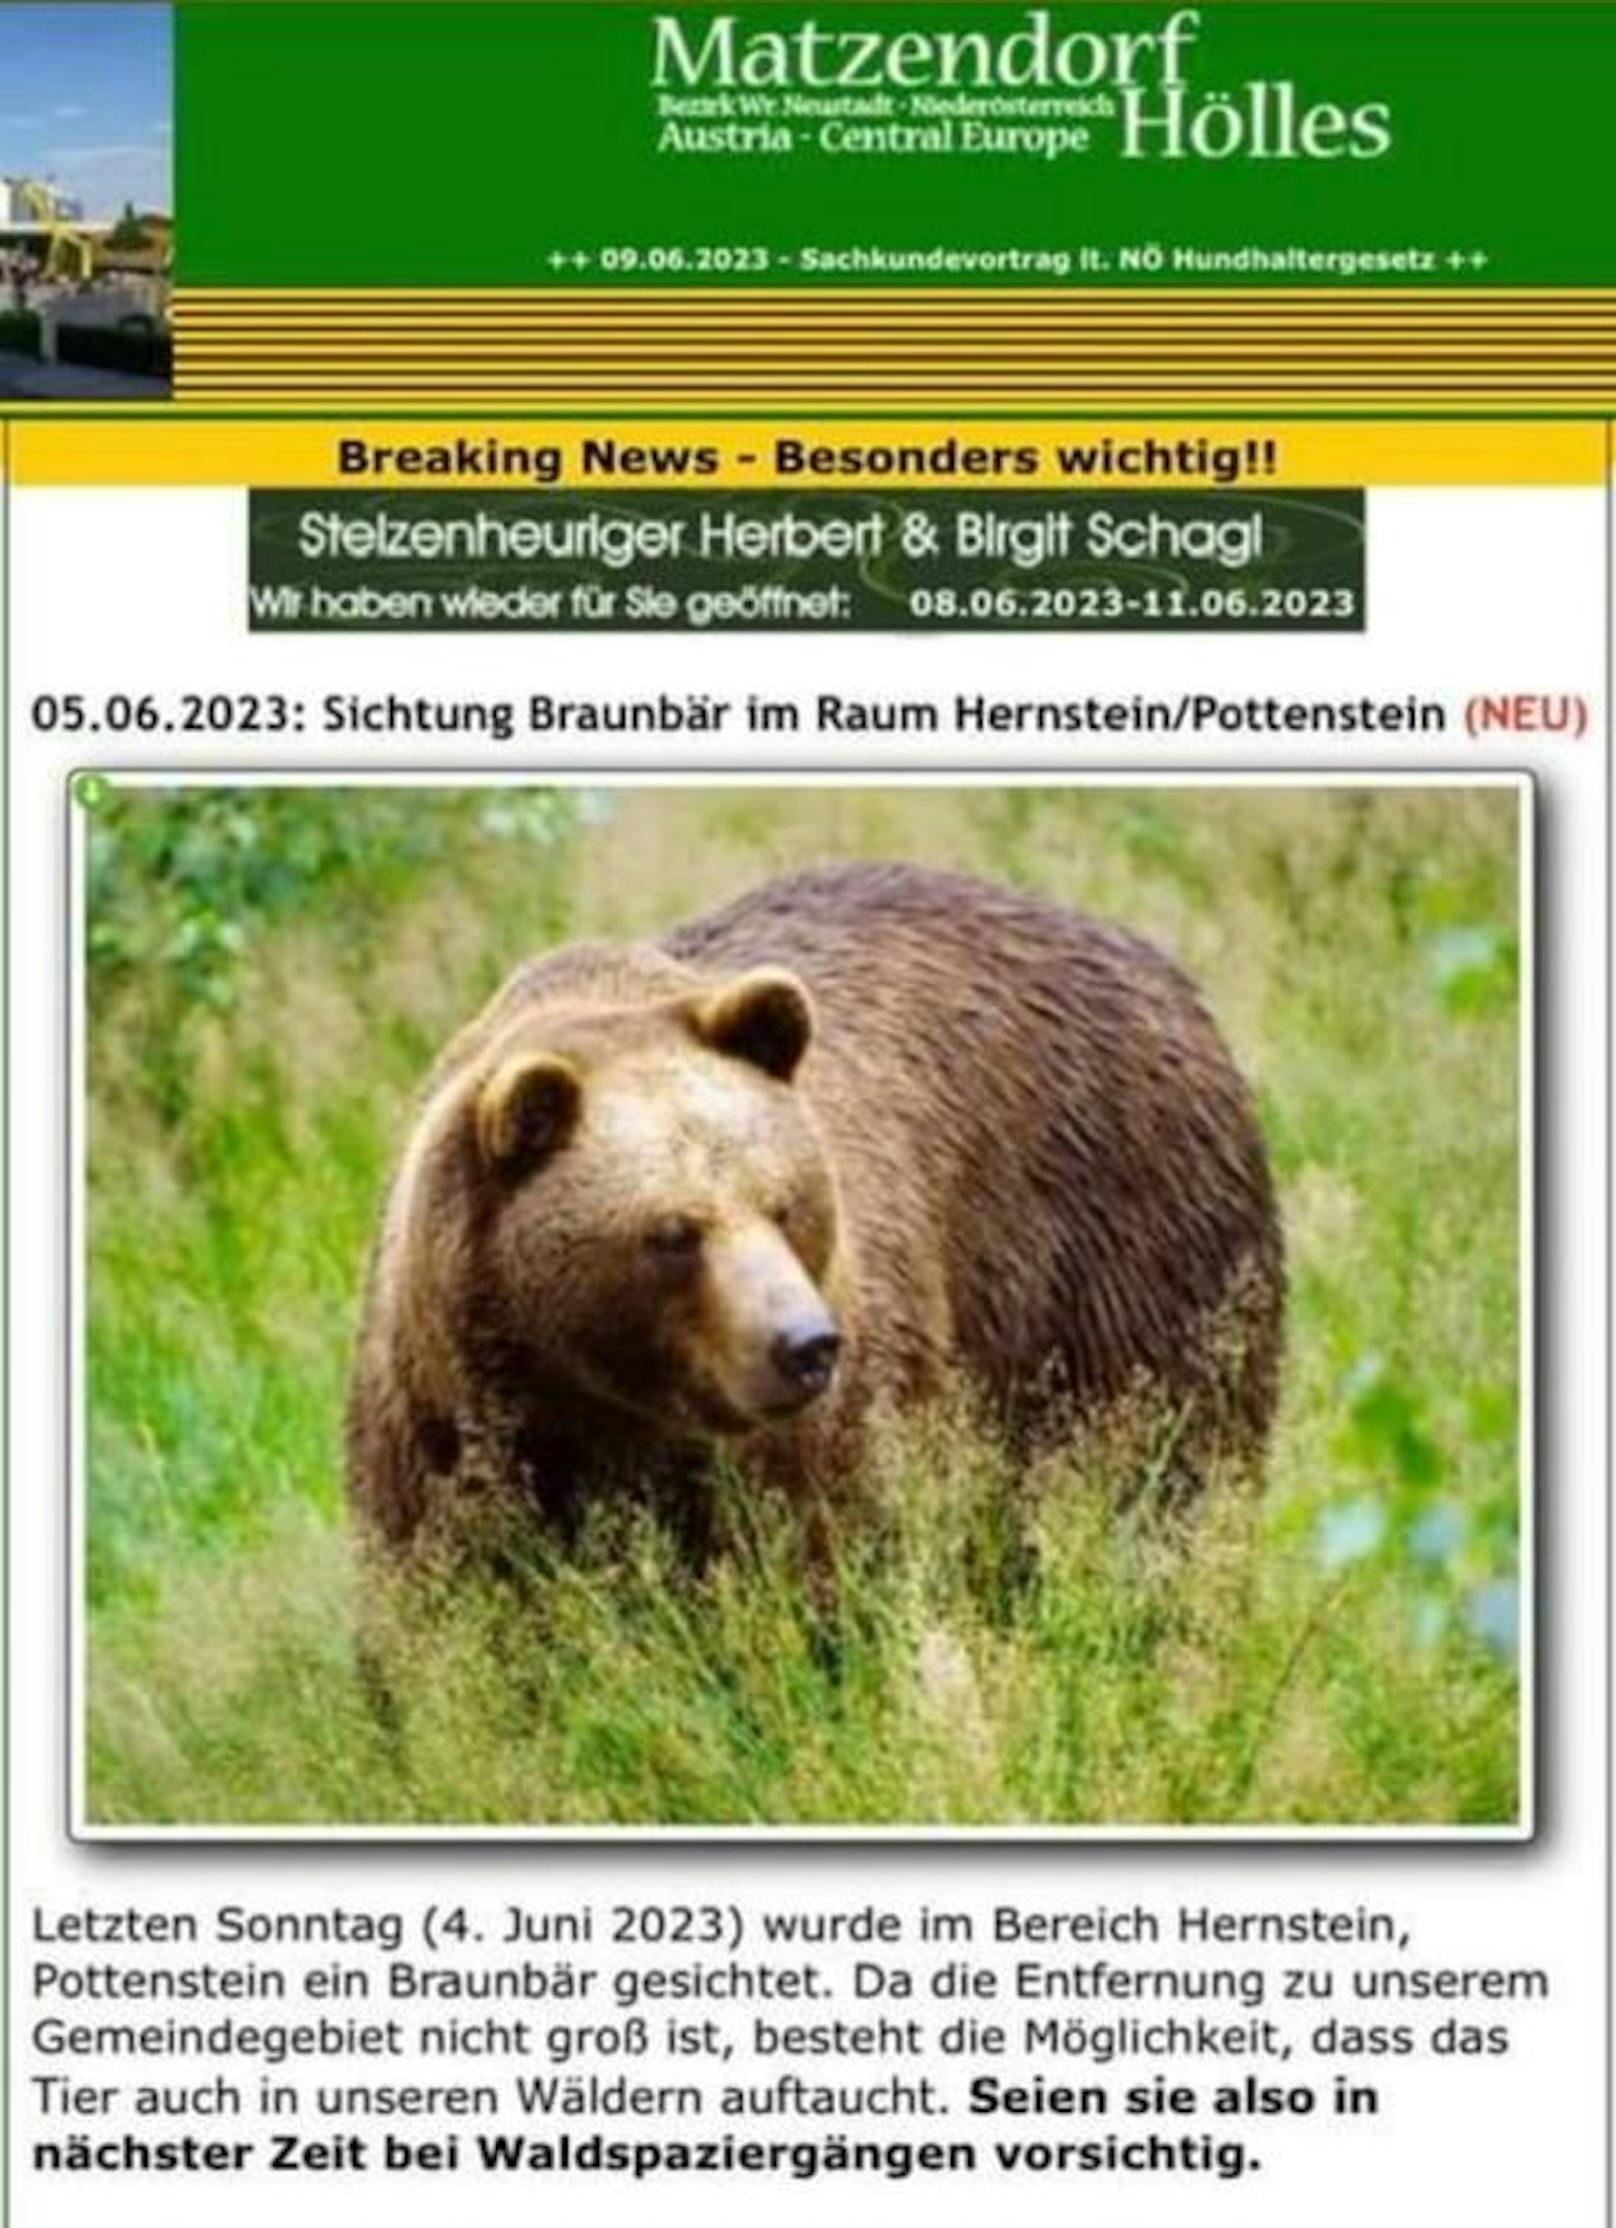 Auf der Homepage von Matzendorf-Hölles wurde eine Warnung ausgegeben.